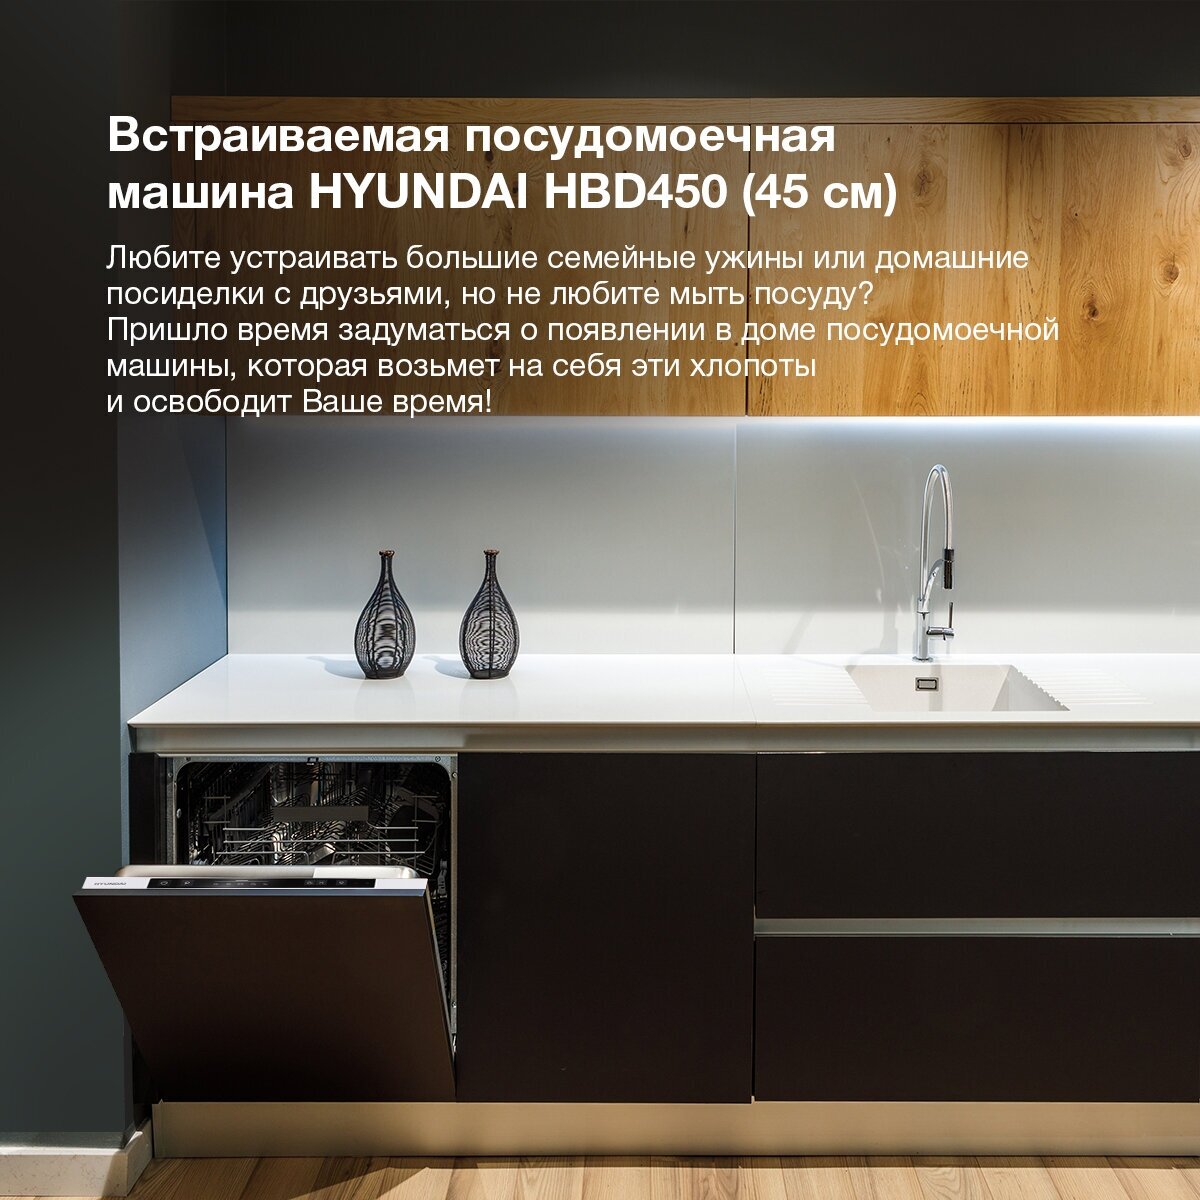 Встраиваемая посудомоечная машина Hyundai HBD 450 - фотография № 19